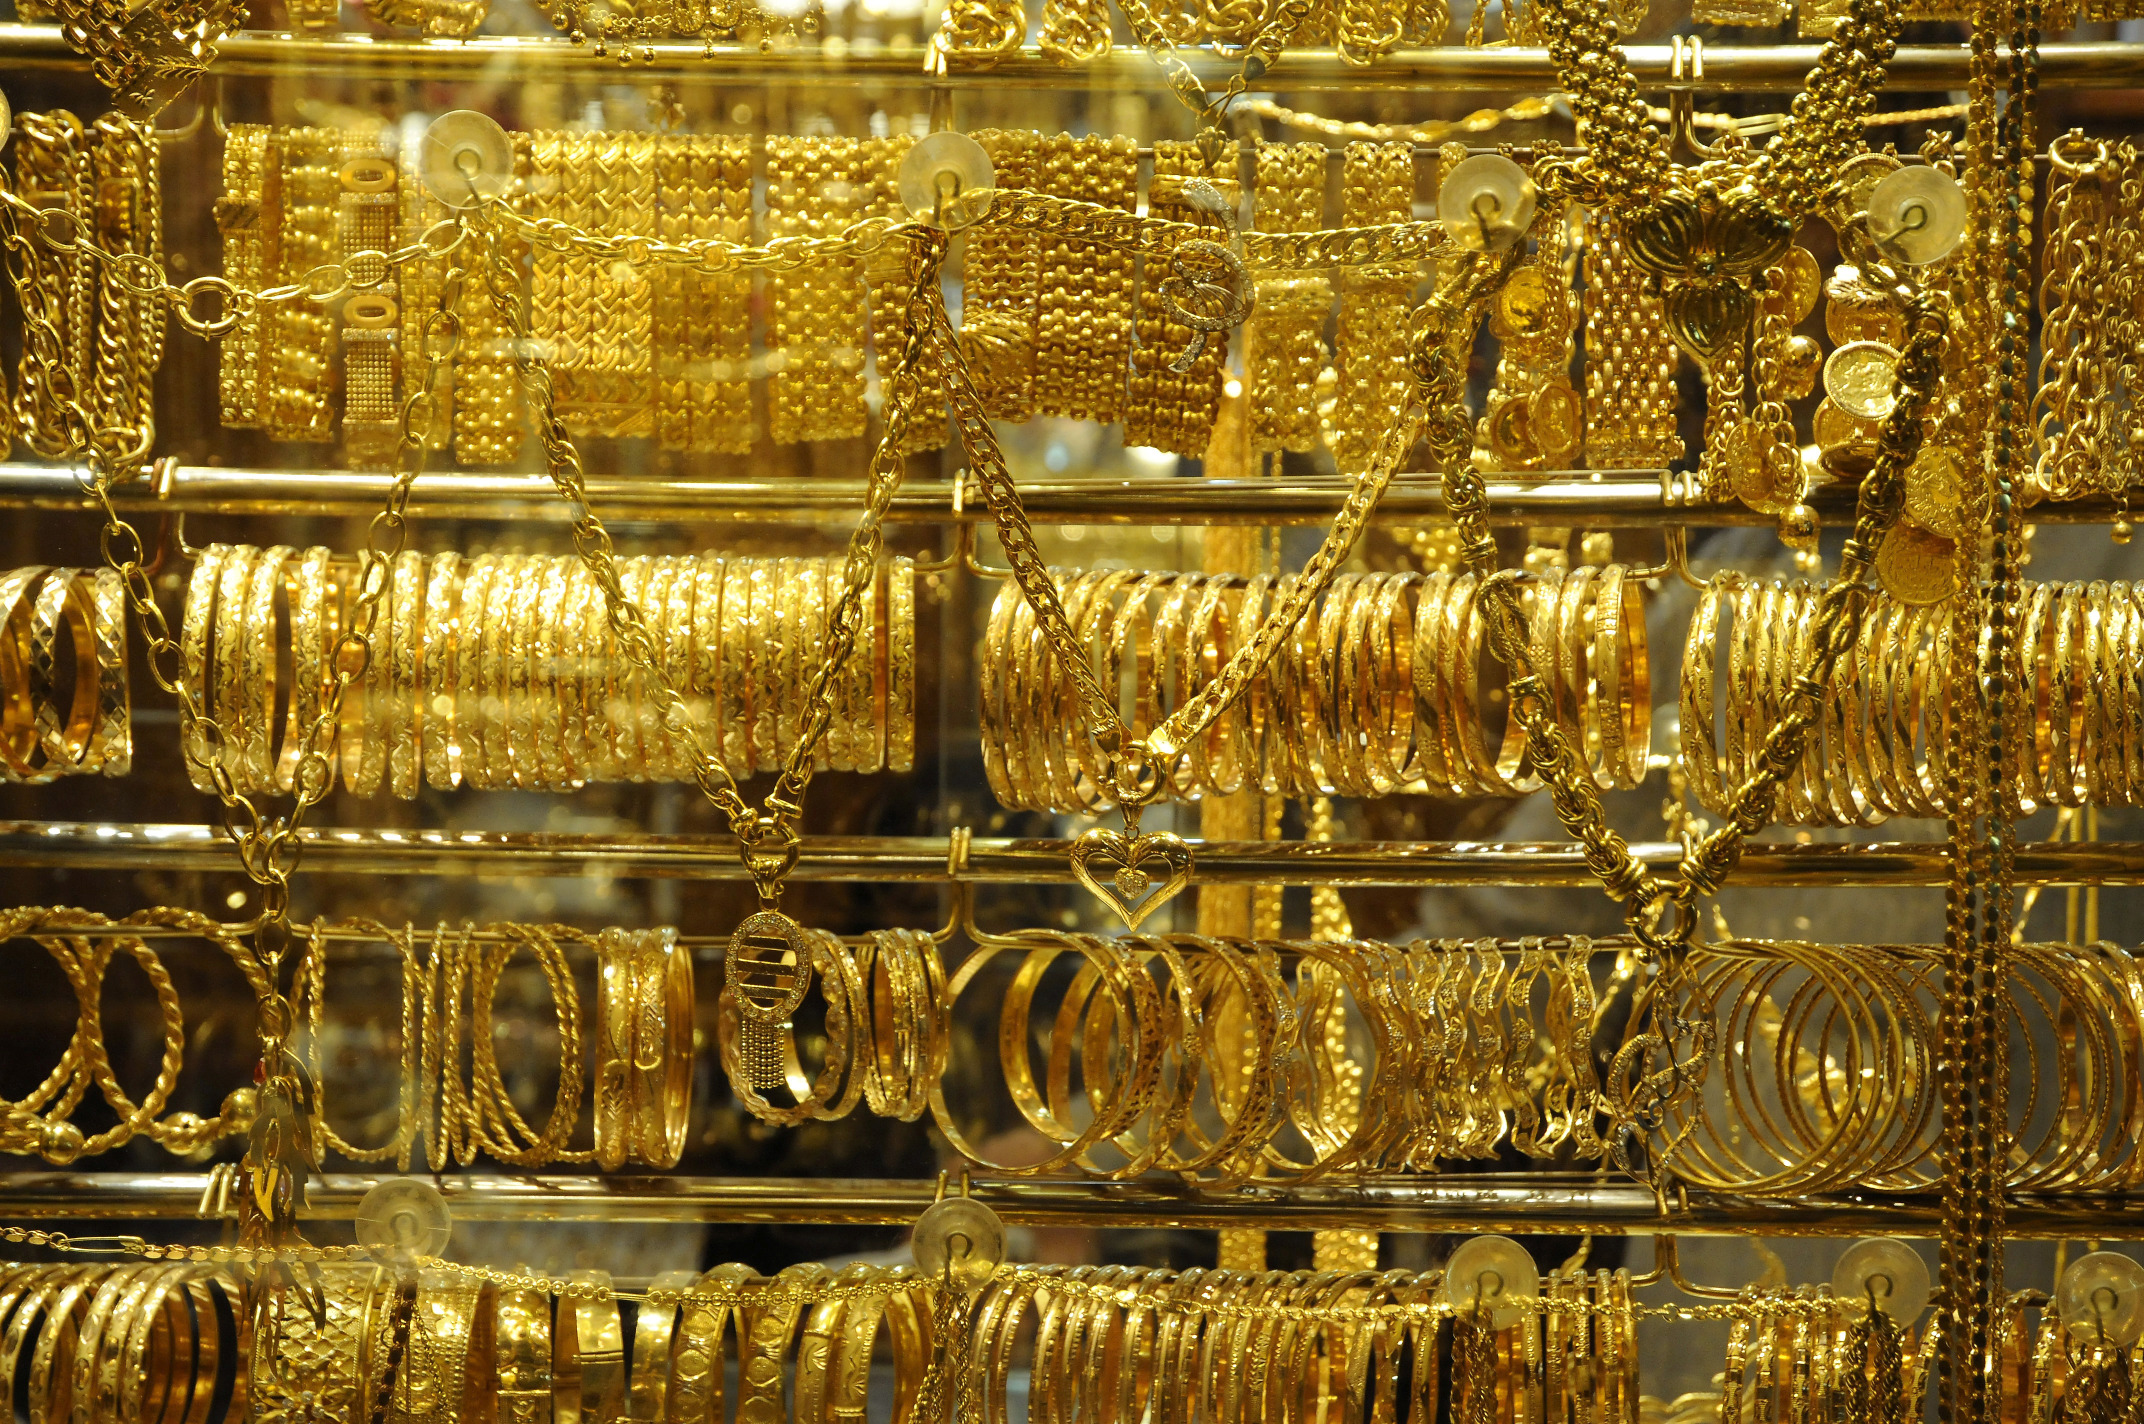 استقرار سعر الذهب اليوم الأحد 12 5 2019 بالتزامن مع إجازة سوق